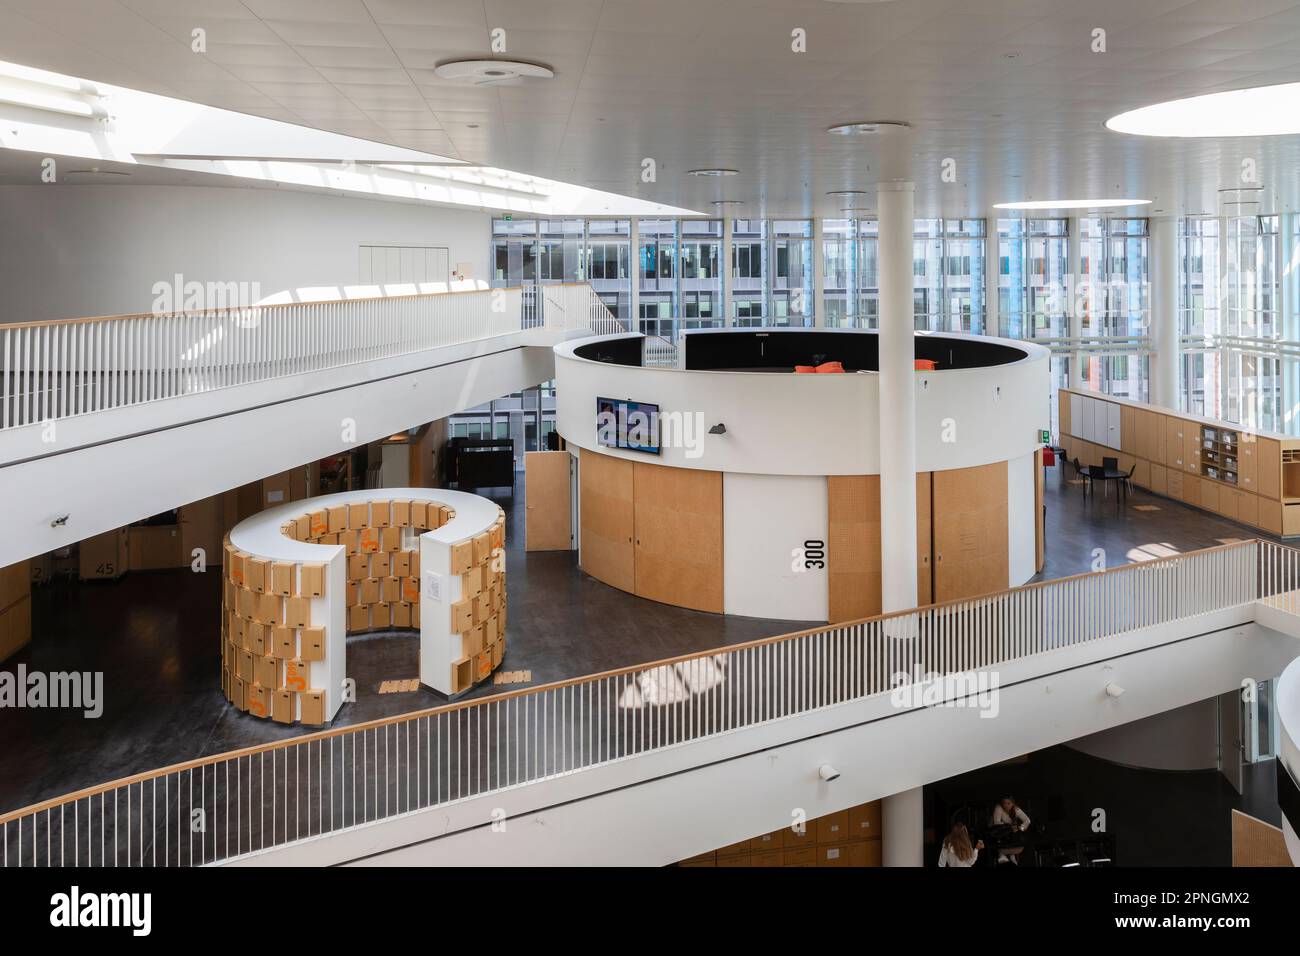 Moderne, flexible Architektur und konsequenter Einsatz von digitalen Medien machen das Orestad Gymnasium in Kopenhagen zum weltweiten Vorbild für Schu Stockfoto